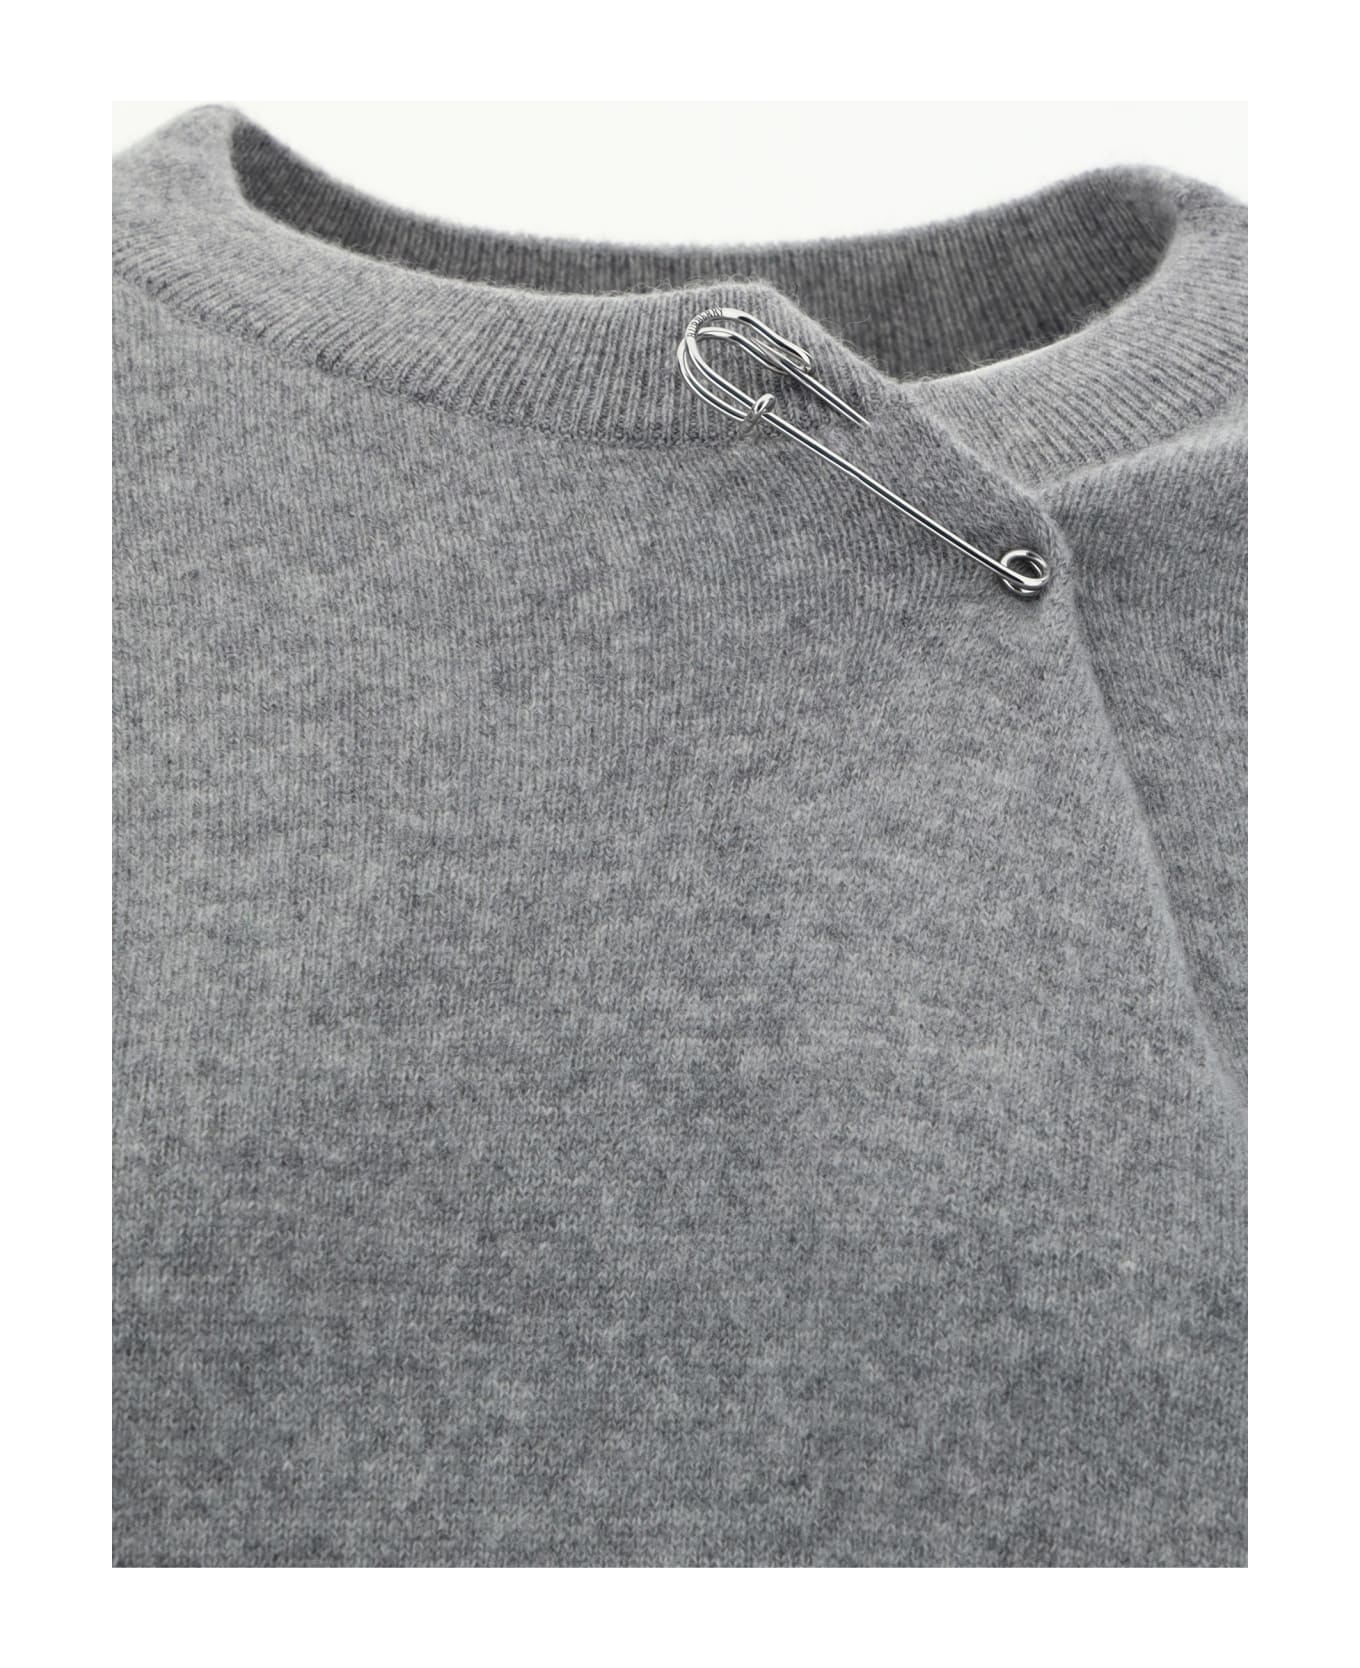 Burberry Knitwear - Light Grey Melange